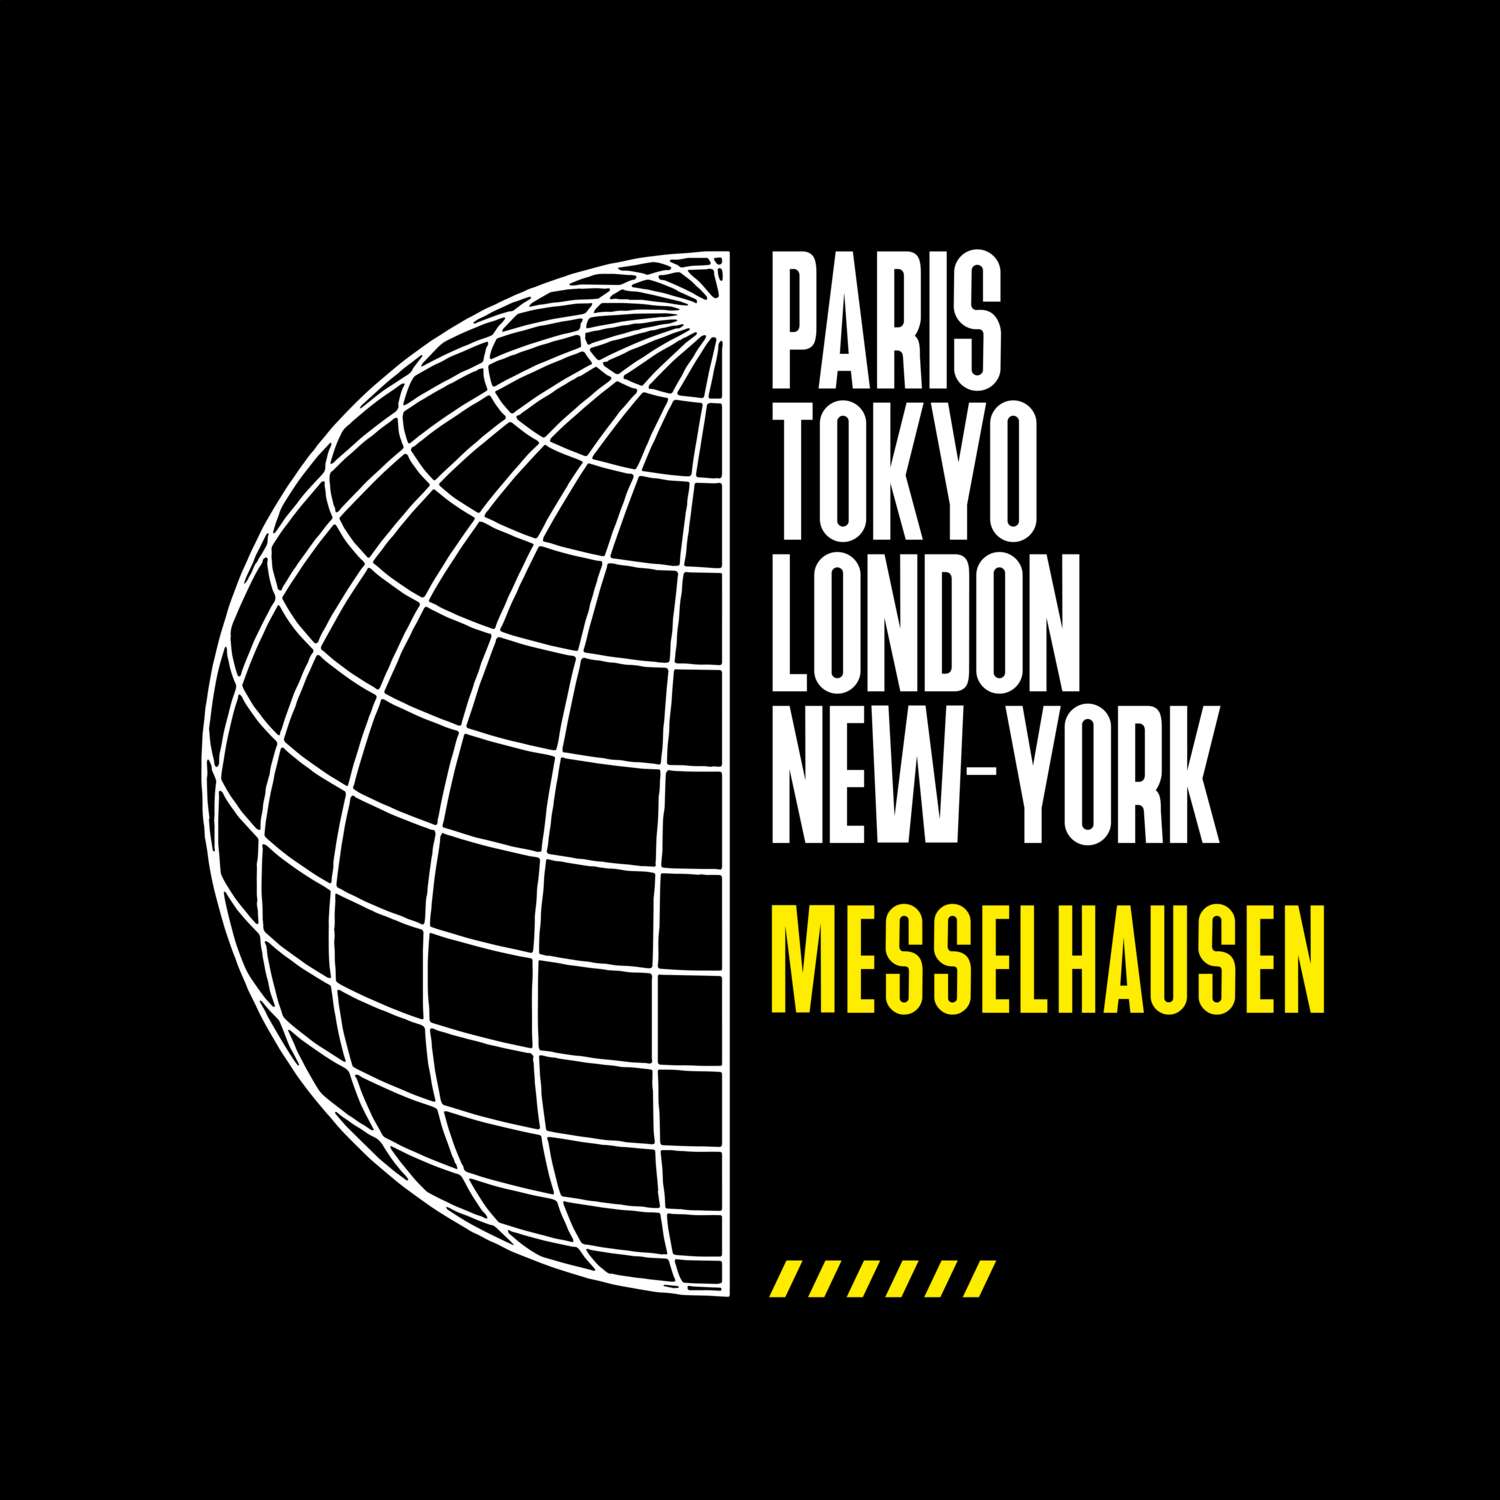 Messelhausen T-Shirt »Paris Tokyo London«